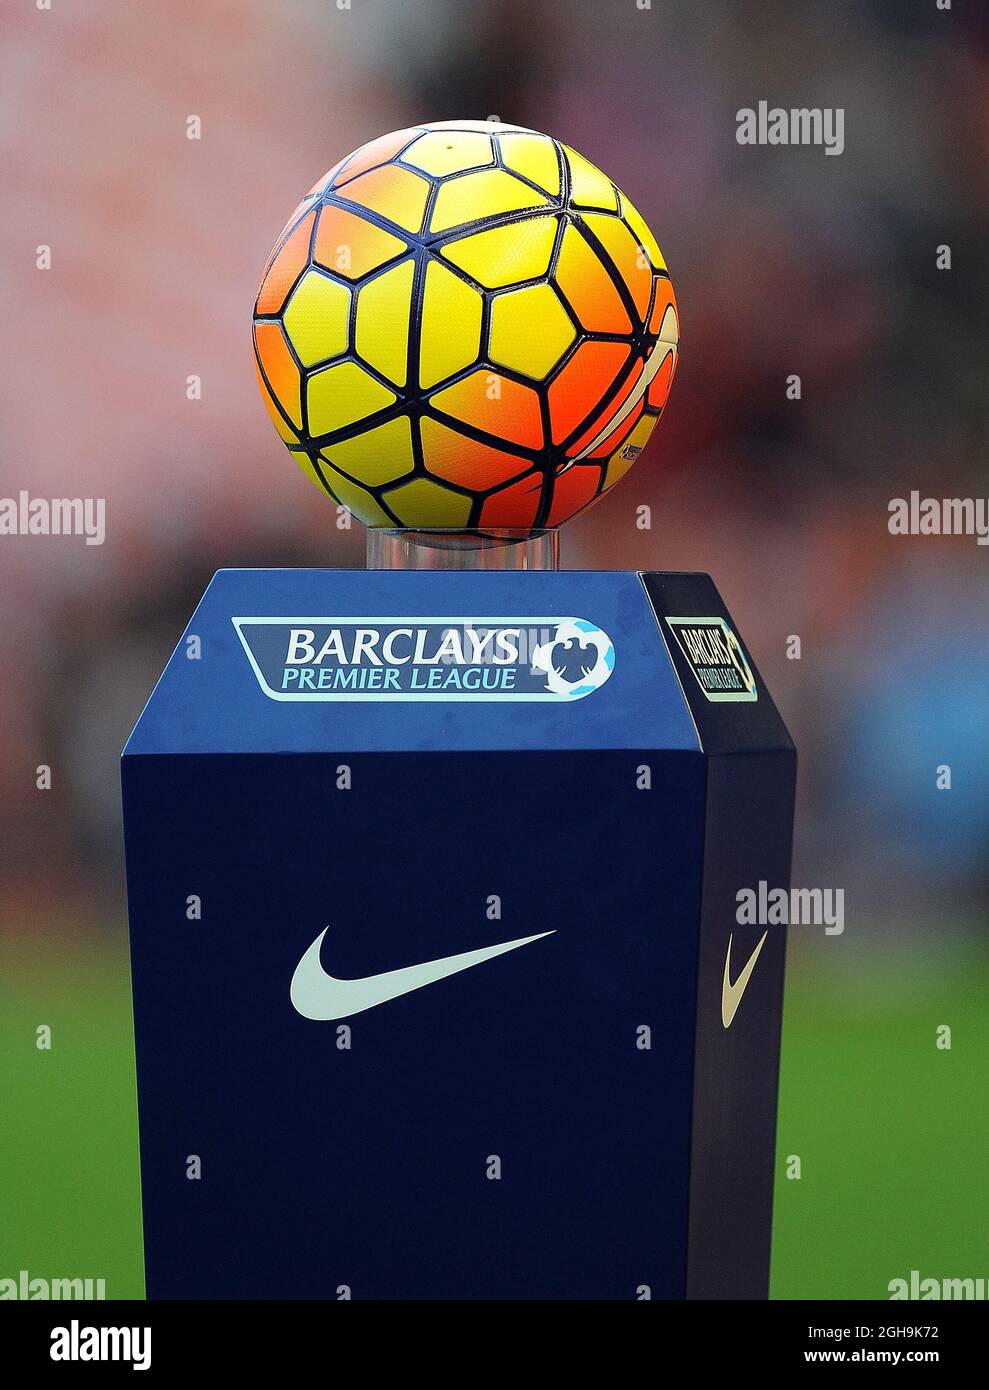 Image #: 40485022 25 de octubre de 2015 - Liverpool, Reino Unido - El nuevo  balón de partido Nike Ordem 3 Barclays Premier League para la temporada 2015-16.-  Barclays Premier League -